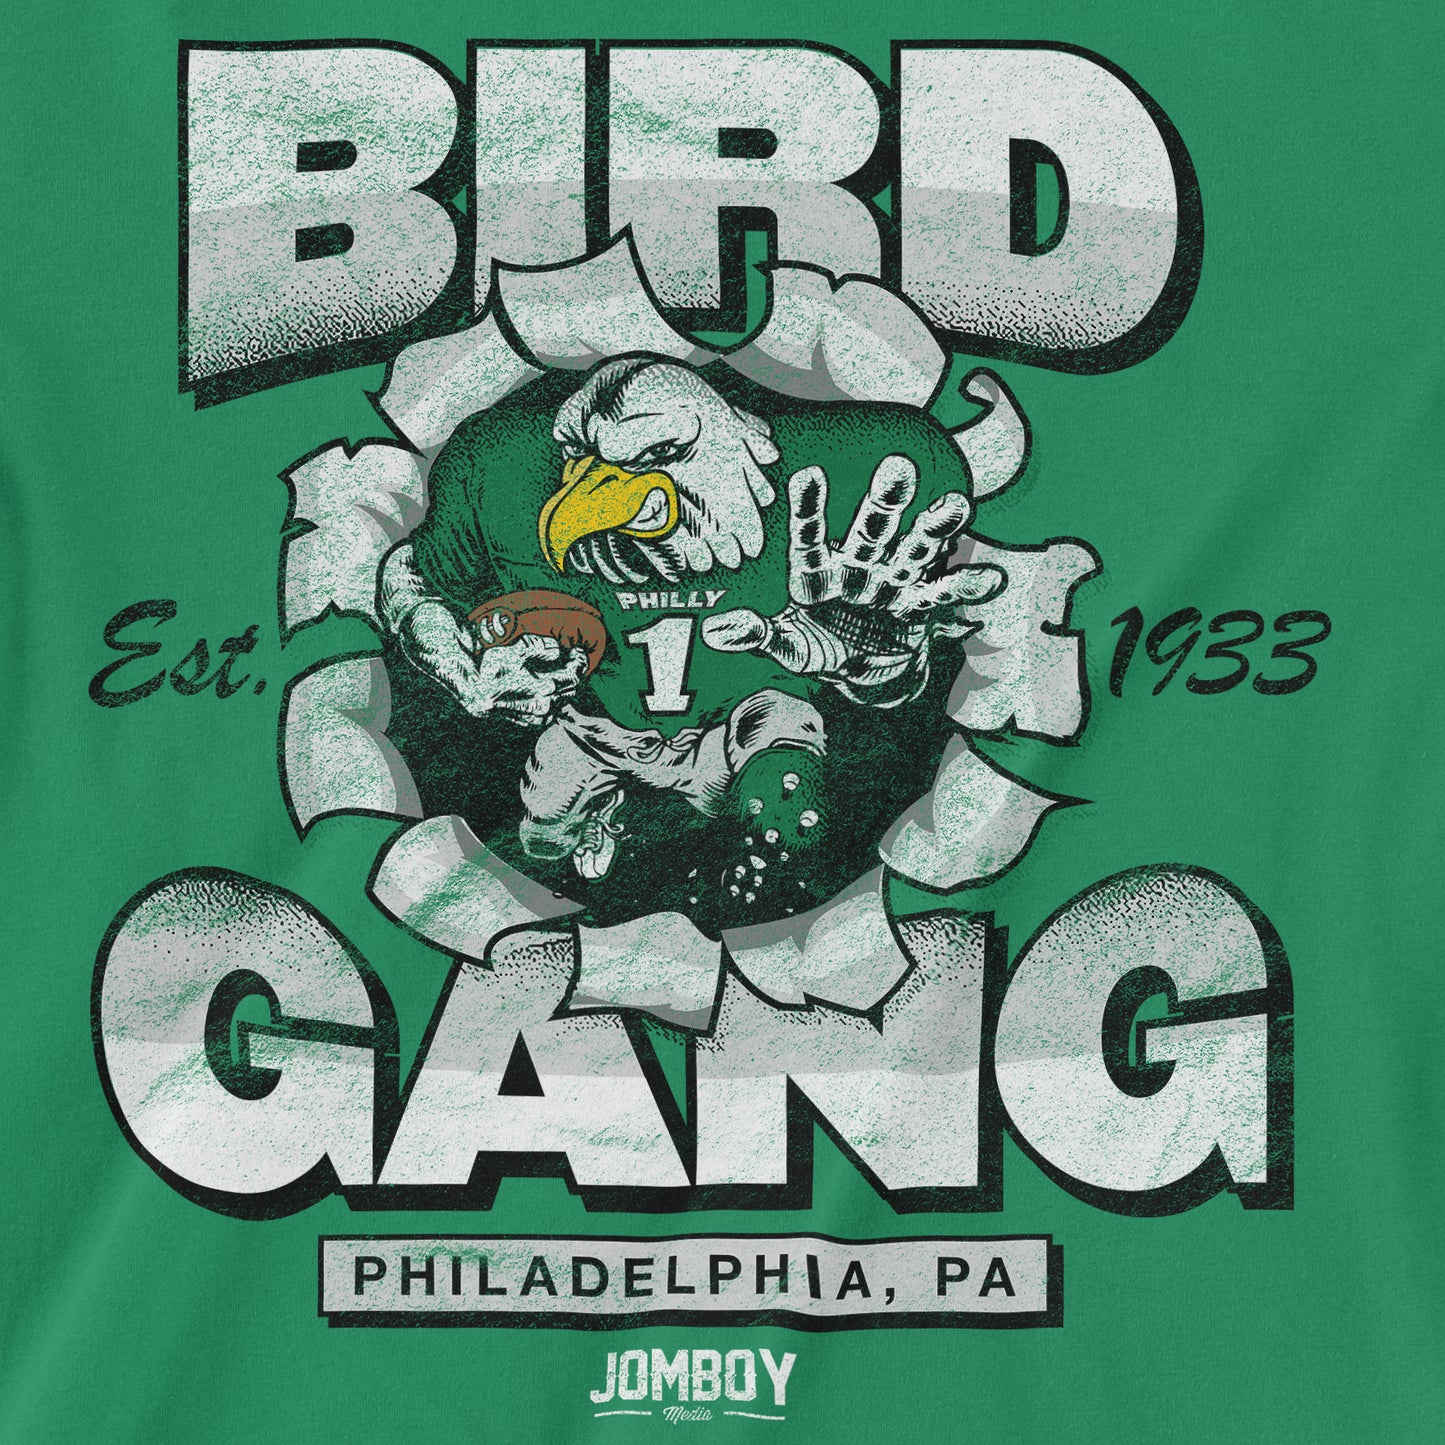 Bird Gang | T-Shirt